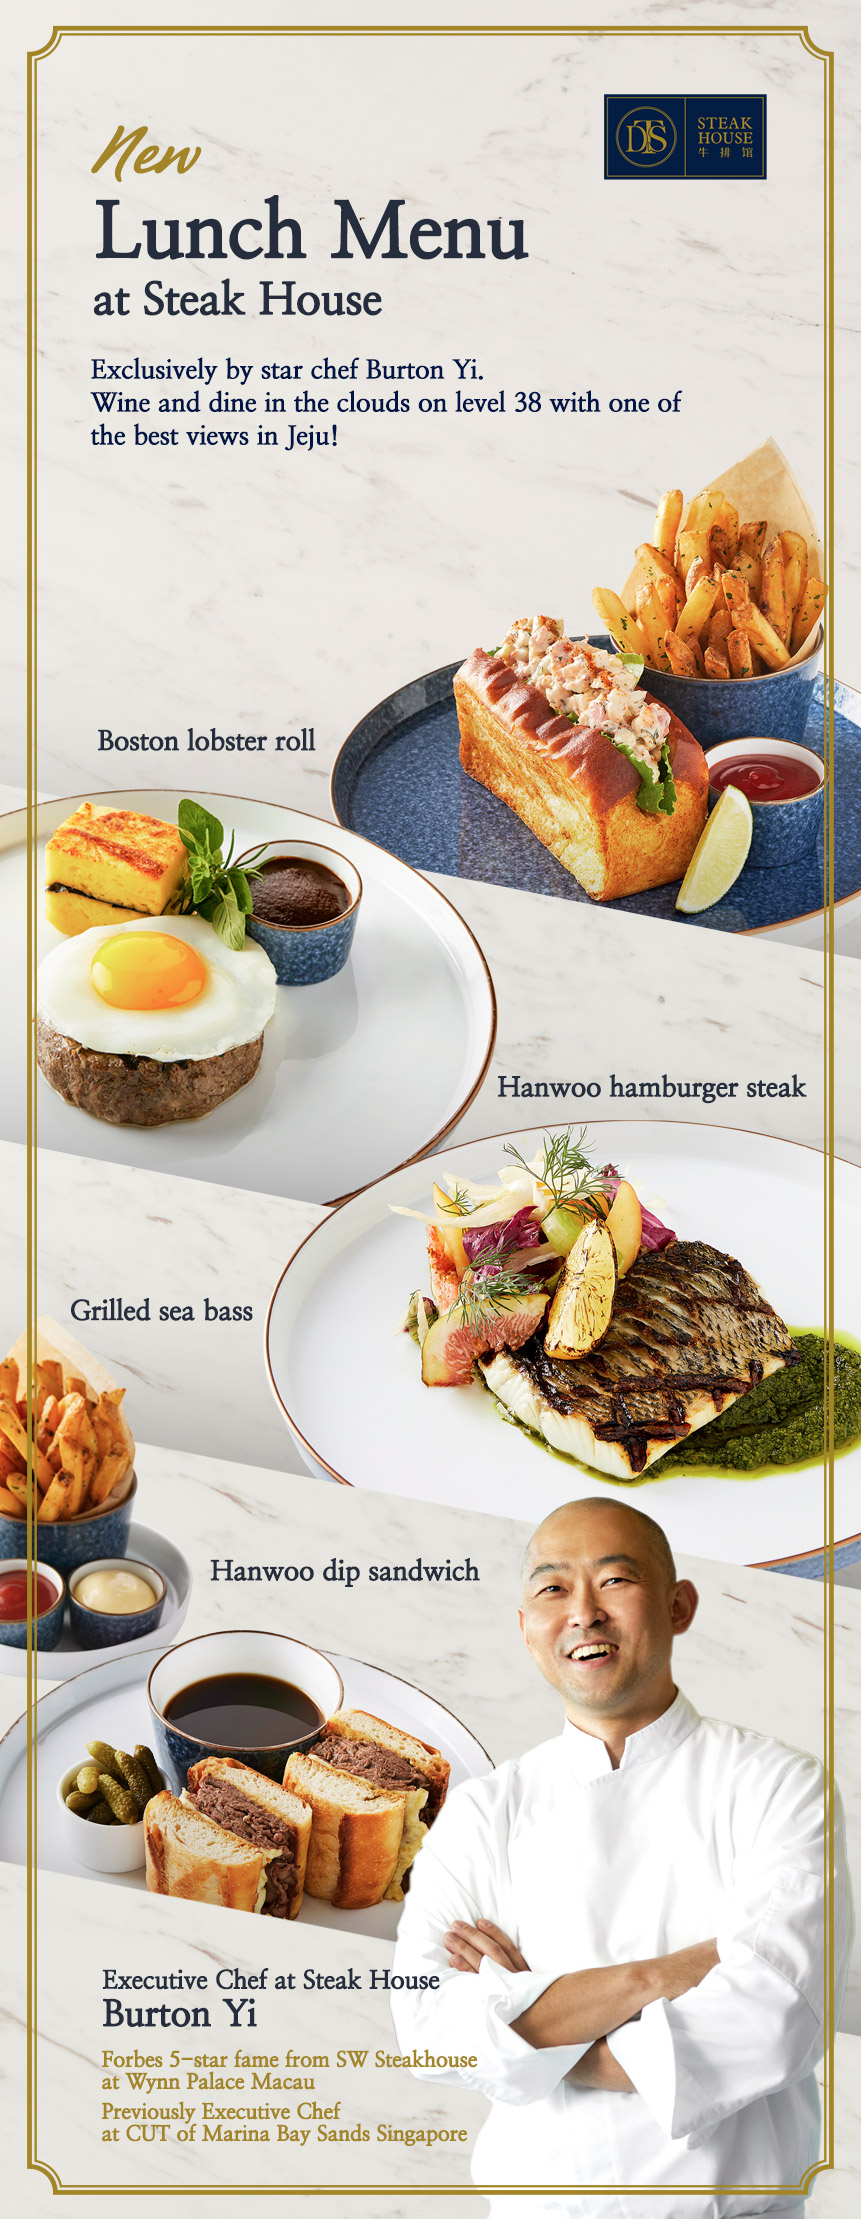 Steak house lunch menu in Jeju Dream Tower